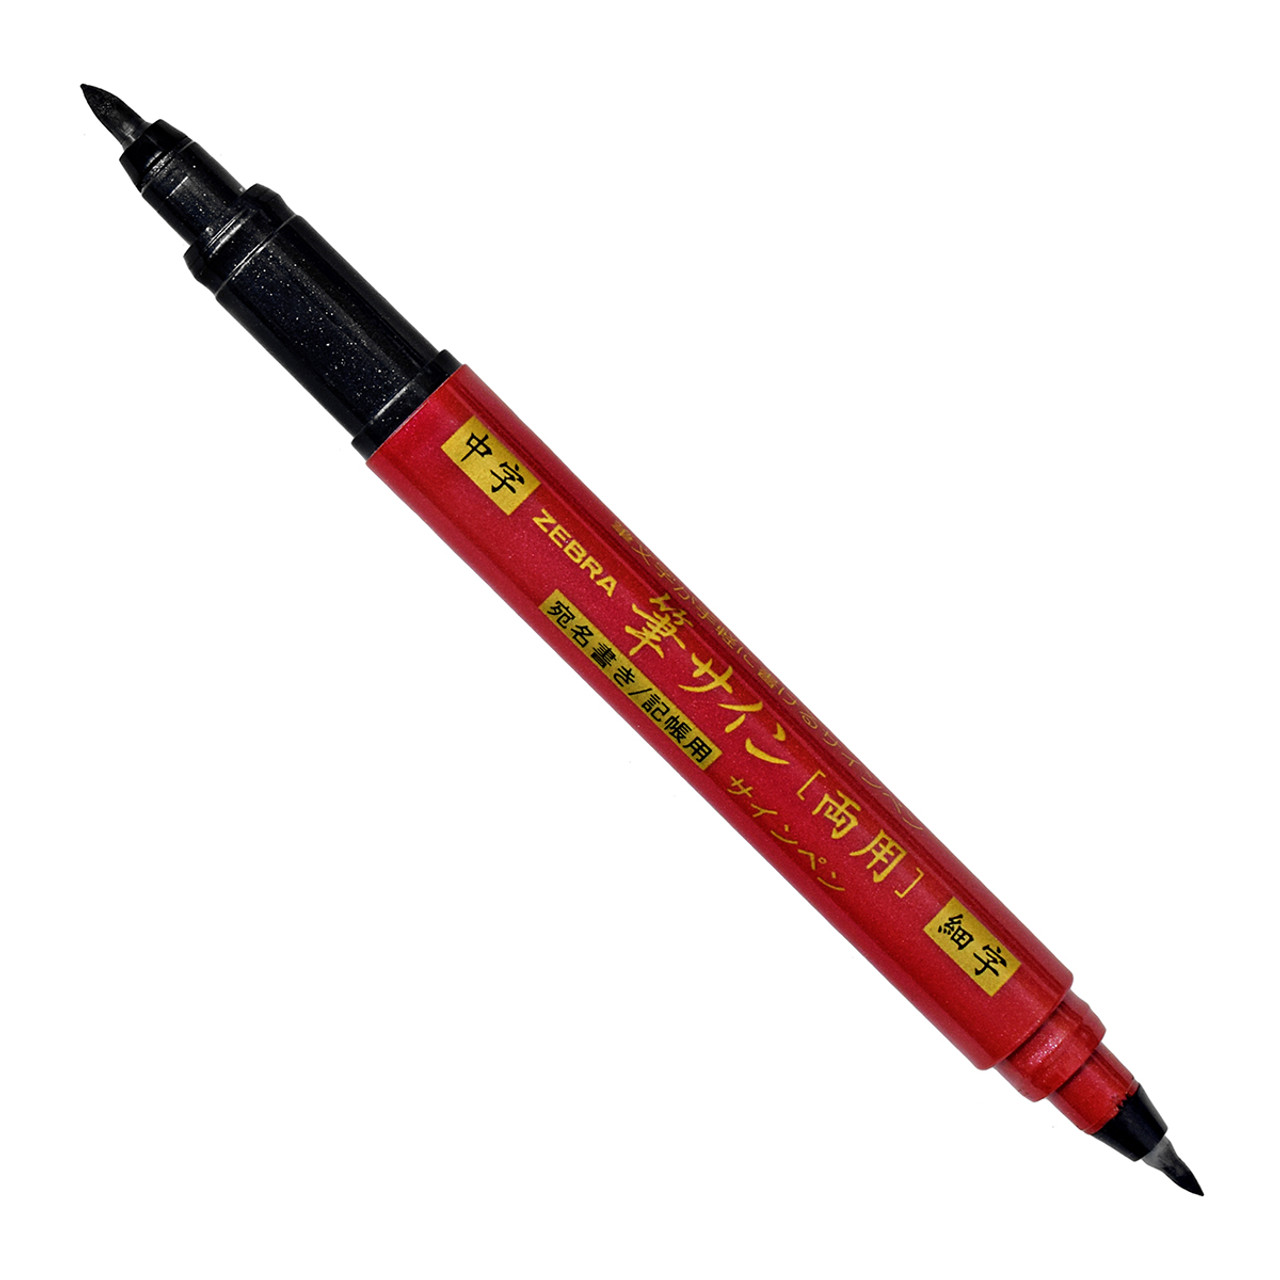 Zebra Pen Mildliner Brush Pen & Marker Set Medium Pen Point - Fine